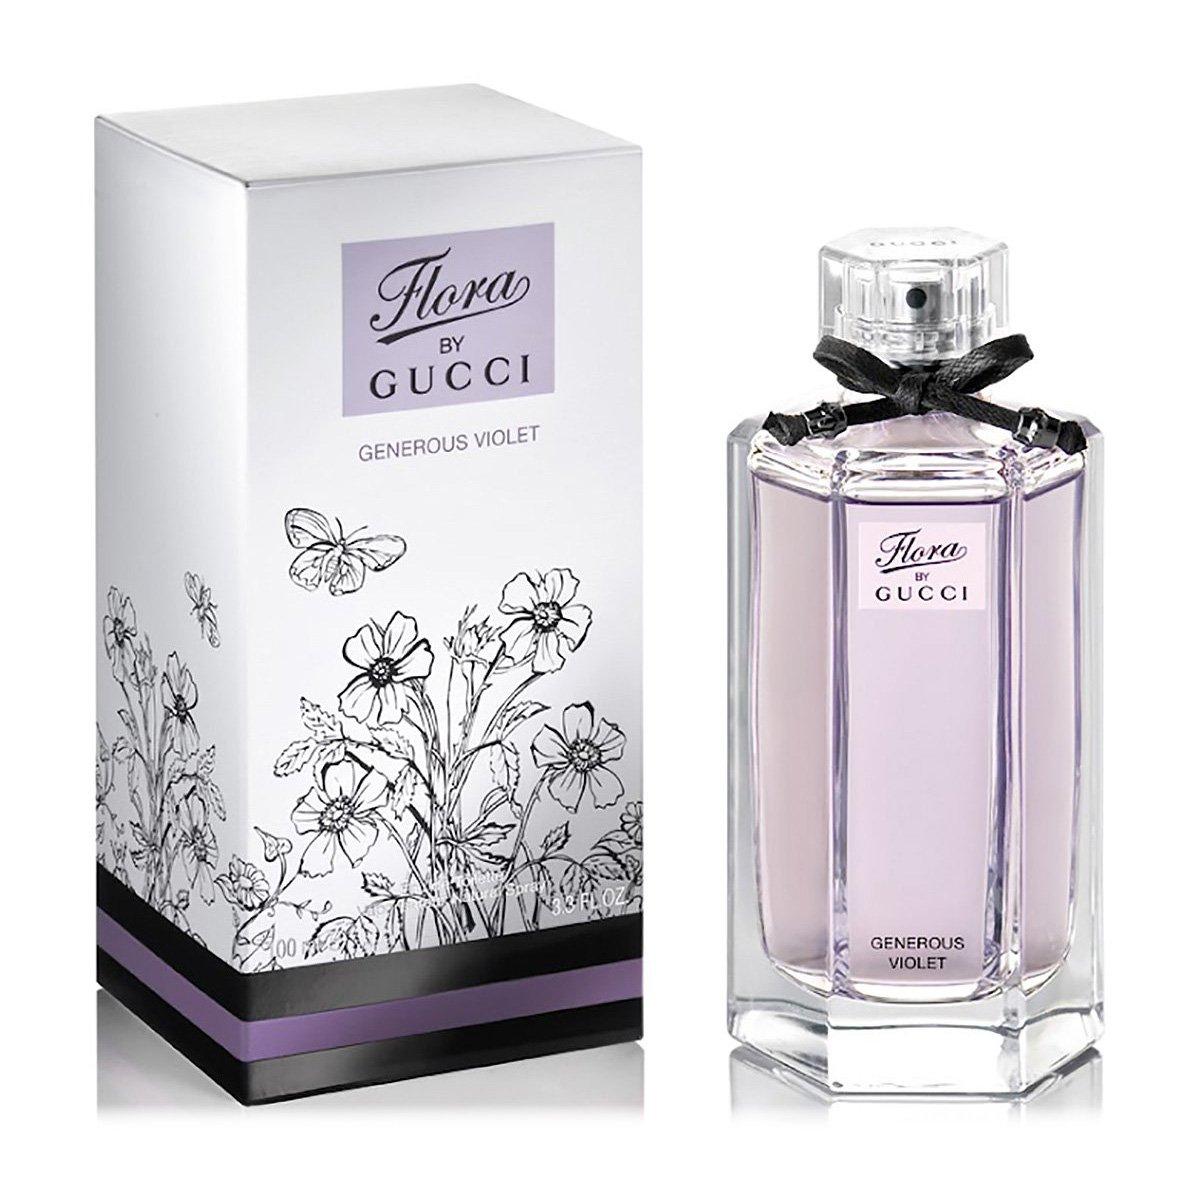 Gucci Flora by Gucci The Generous Violet edt 100ml (Качество,Стойкость)